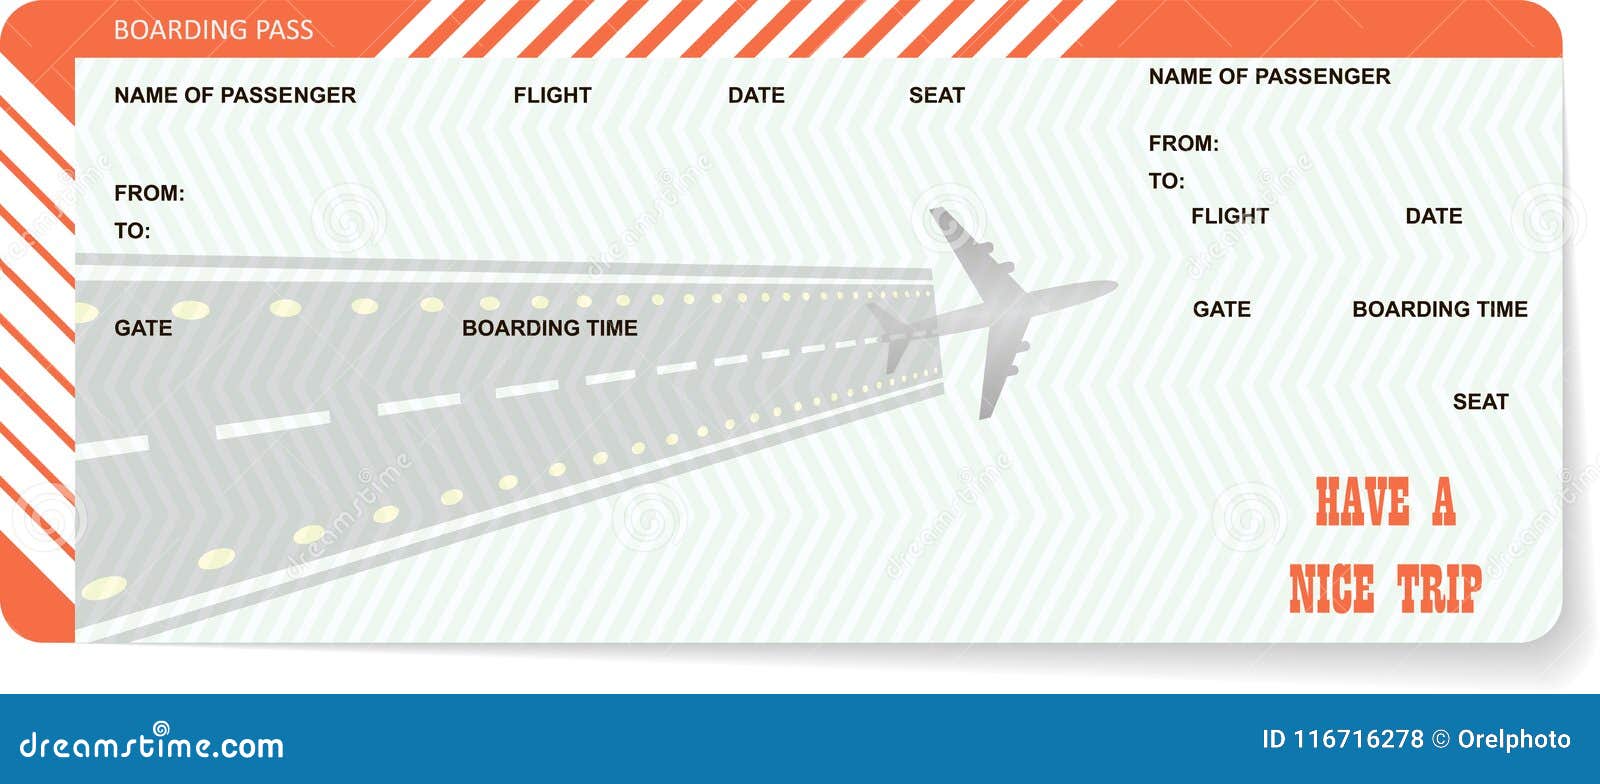 Распечатать игрушечные билеты на самолет билеты на самолет новый уренгой сочи прямой